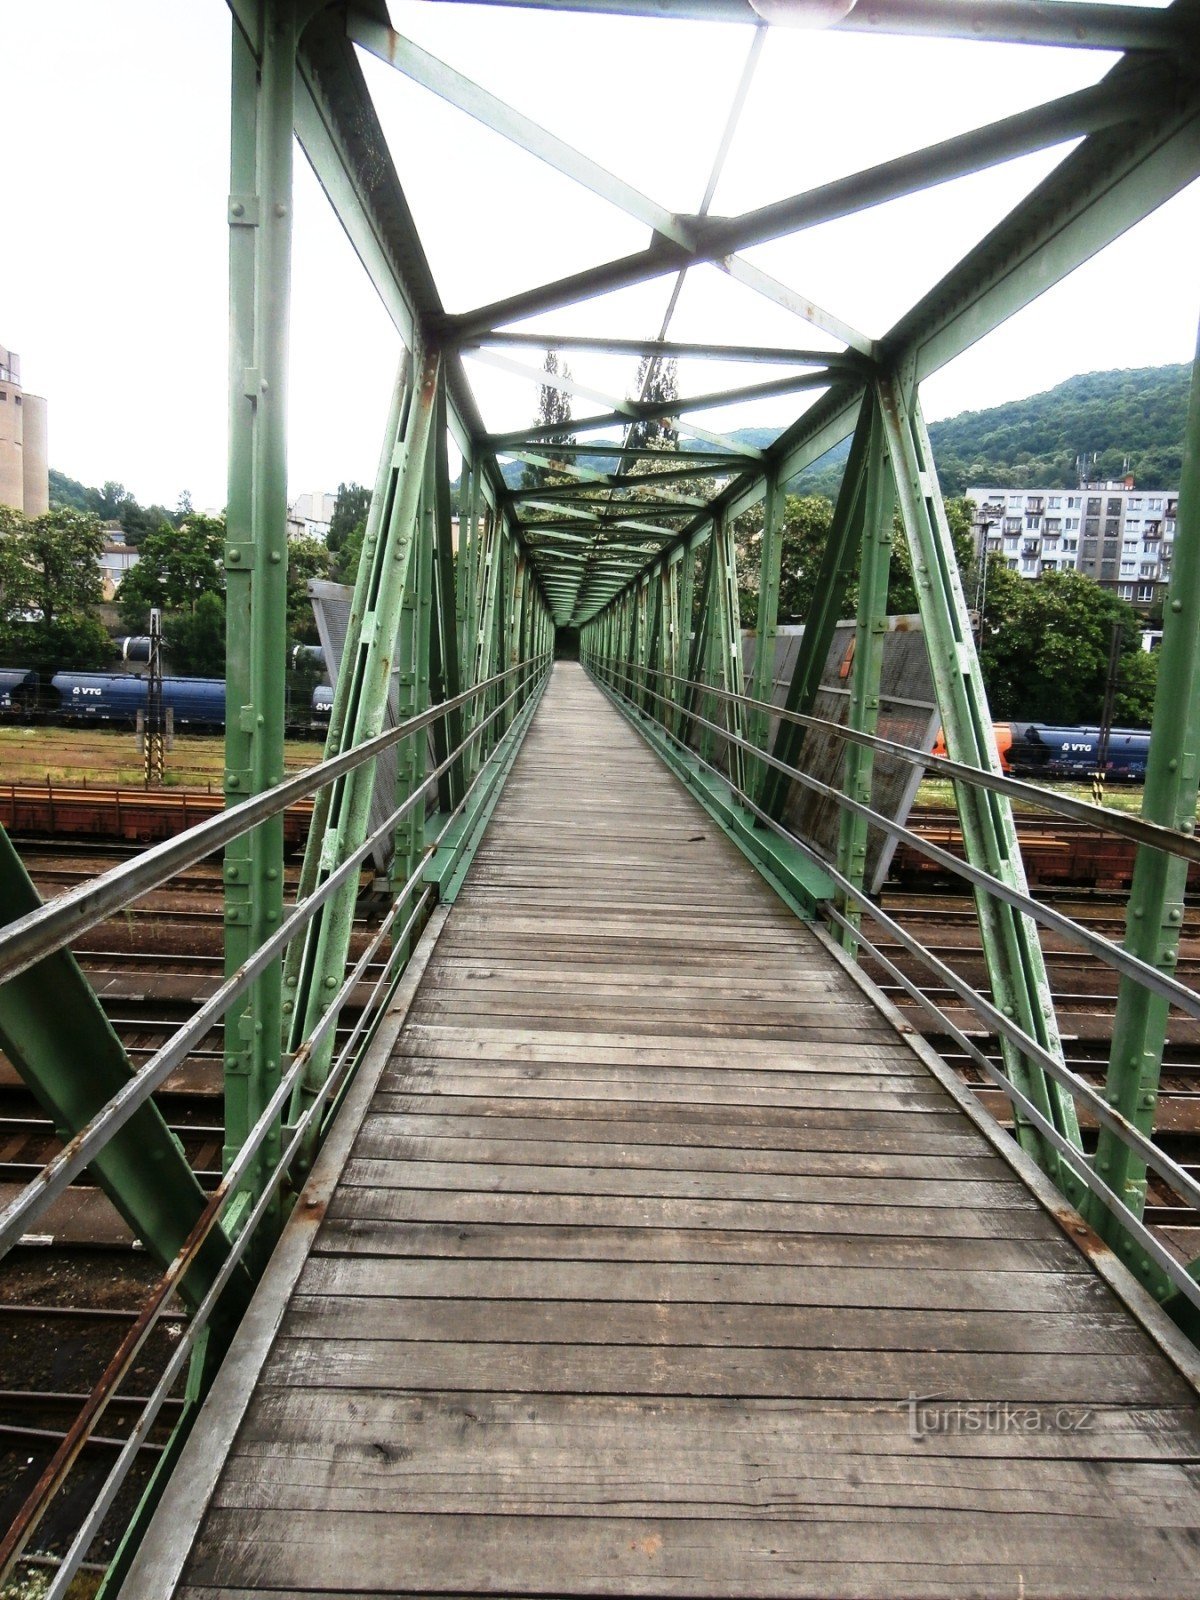 A vasúti síneken átívelő hídon át a vár felé tartok